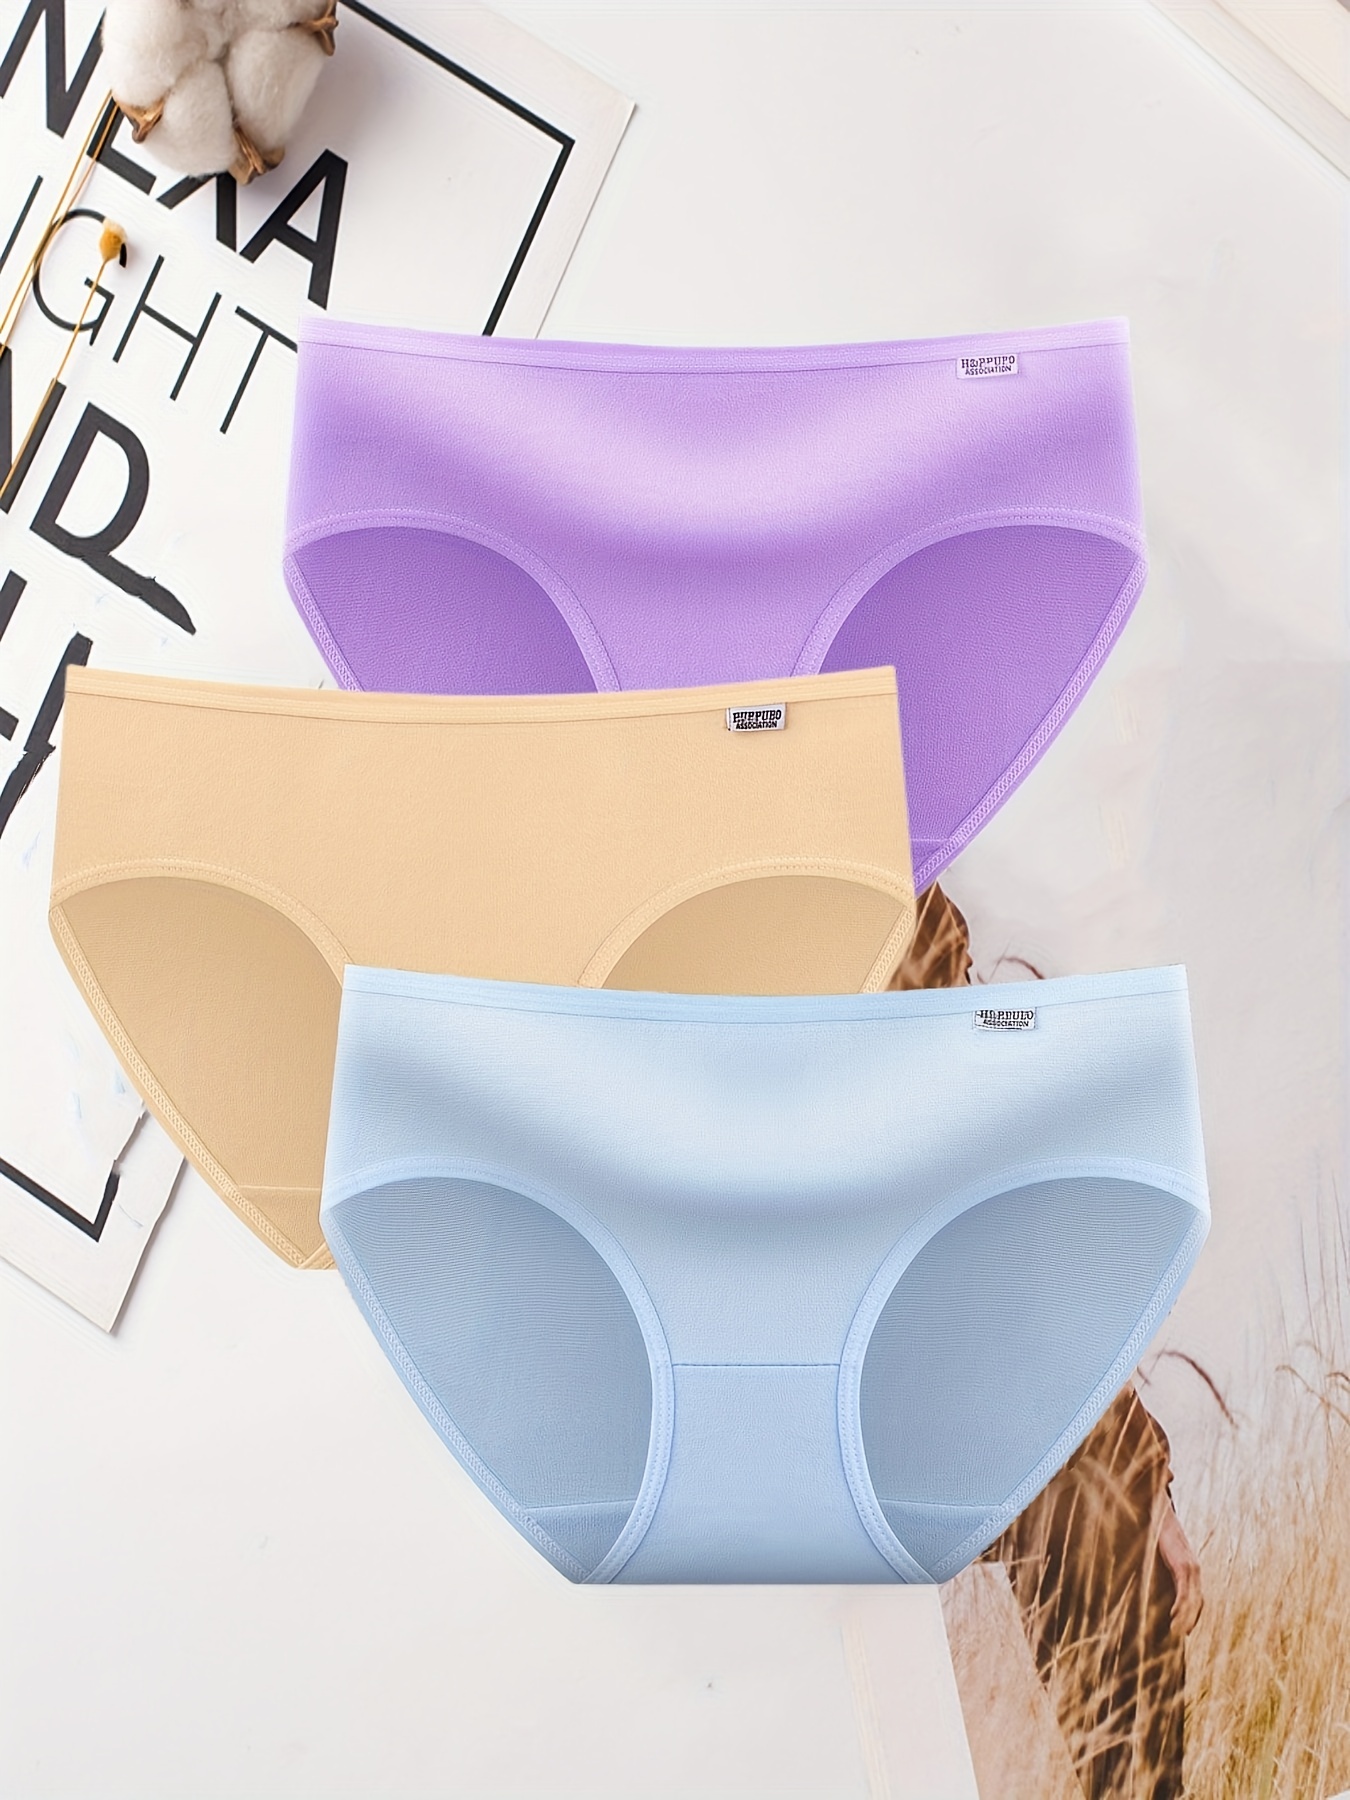 1/3PCS Women Panties Briefs Underwear Lingerie Knicker Thongs G